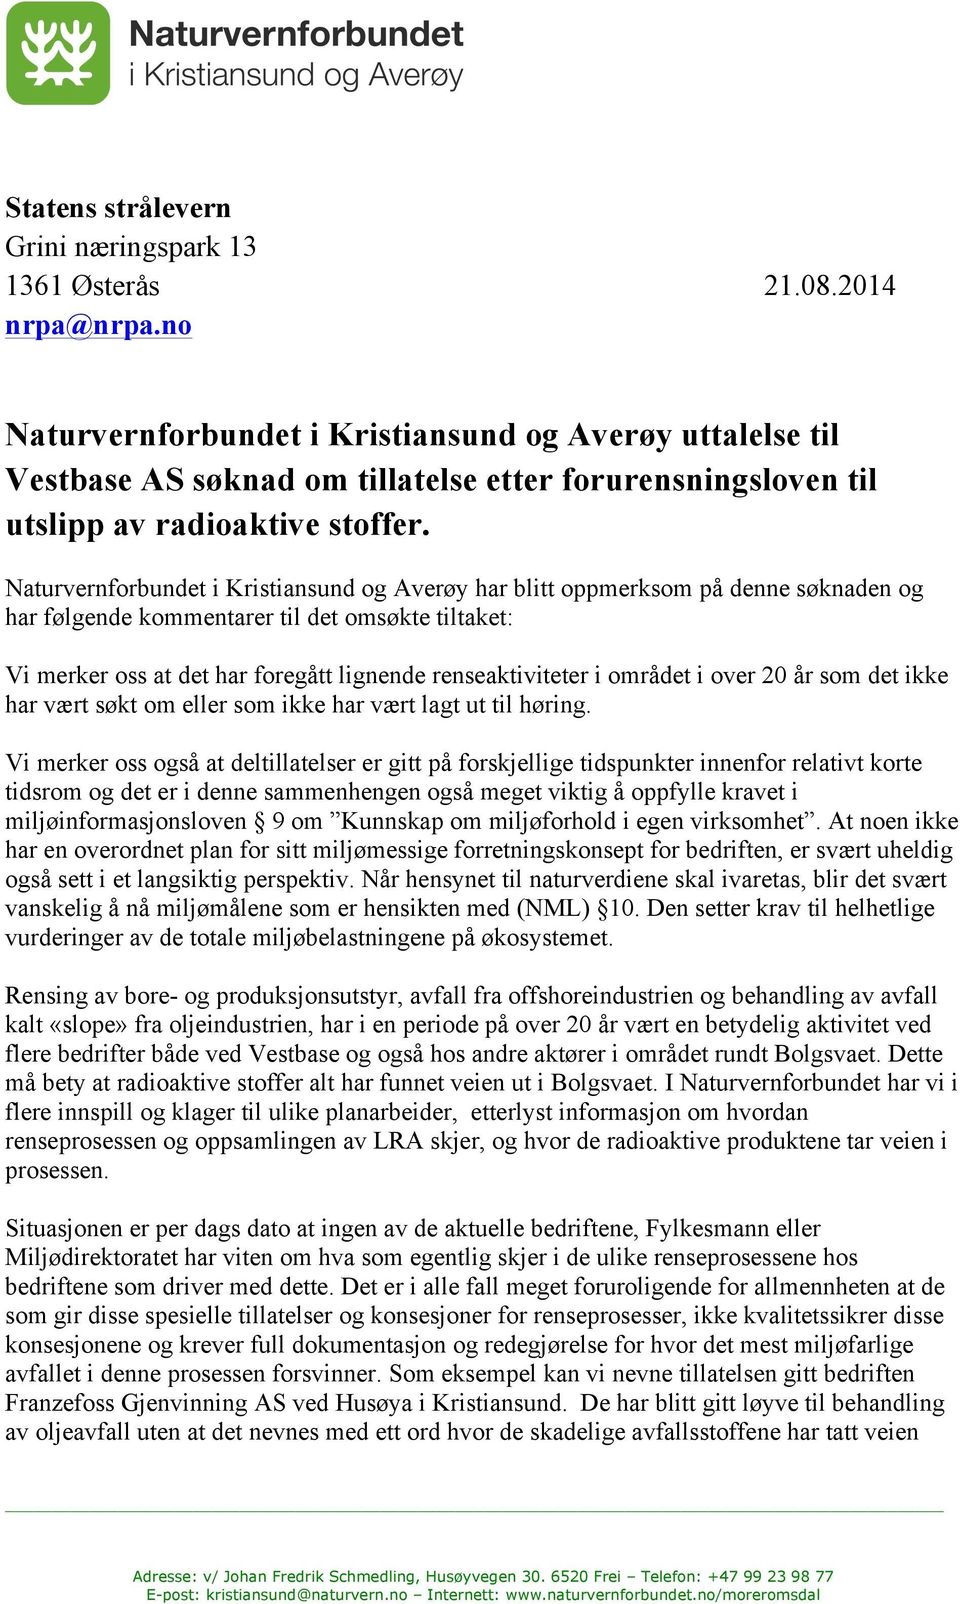 Naturvernforbundet i Kristiansund og Averøy har blitt oppmerksom på denne søknaden og har følgende kommentarer til det omsøkte tiltaket: Vi merker oss at det har foregått lignende renseaktiviteter i